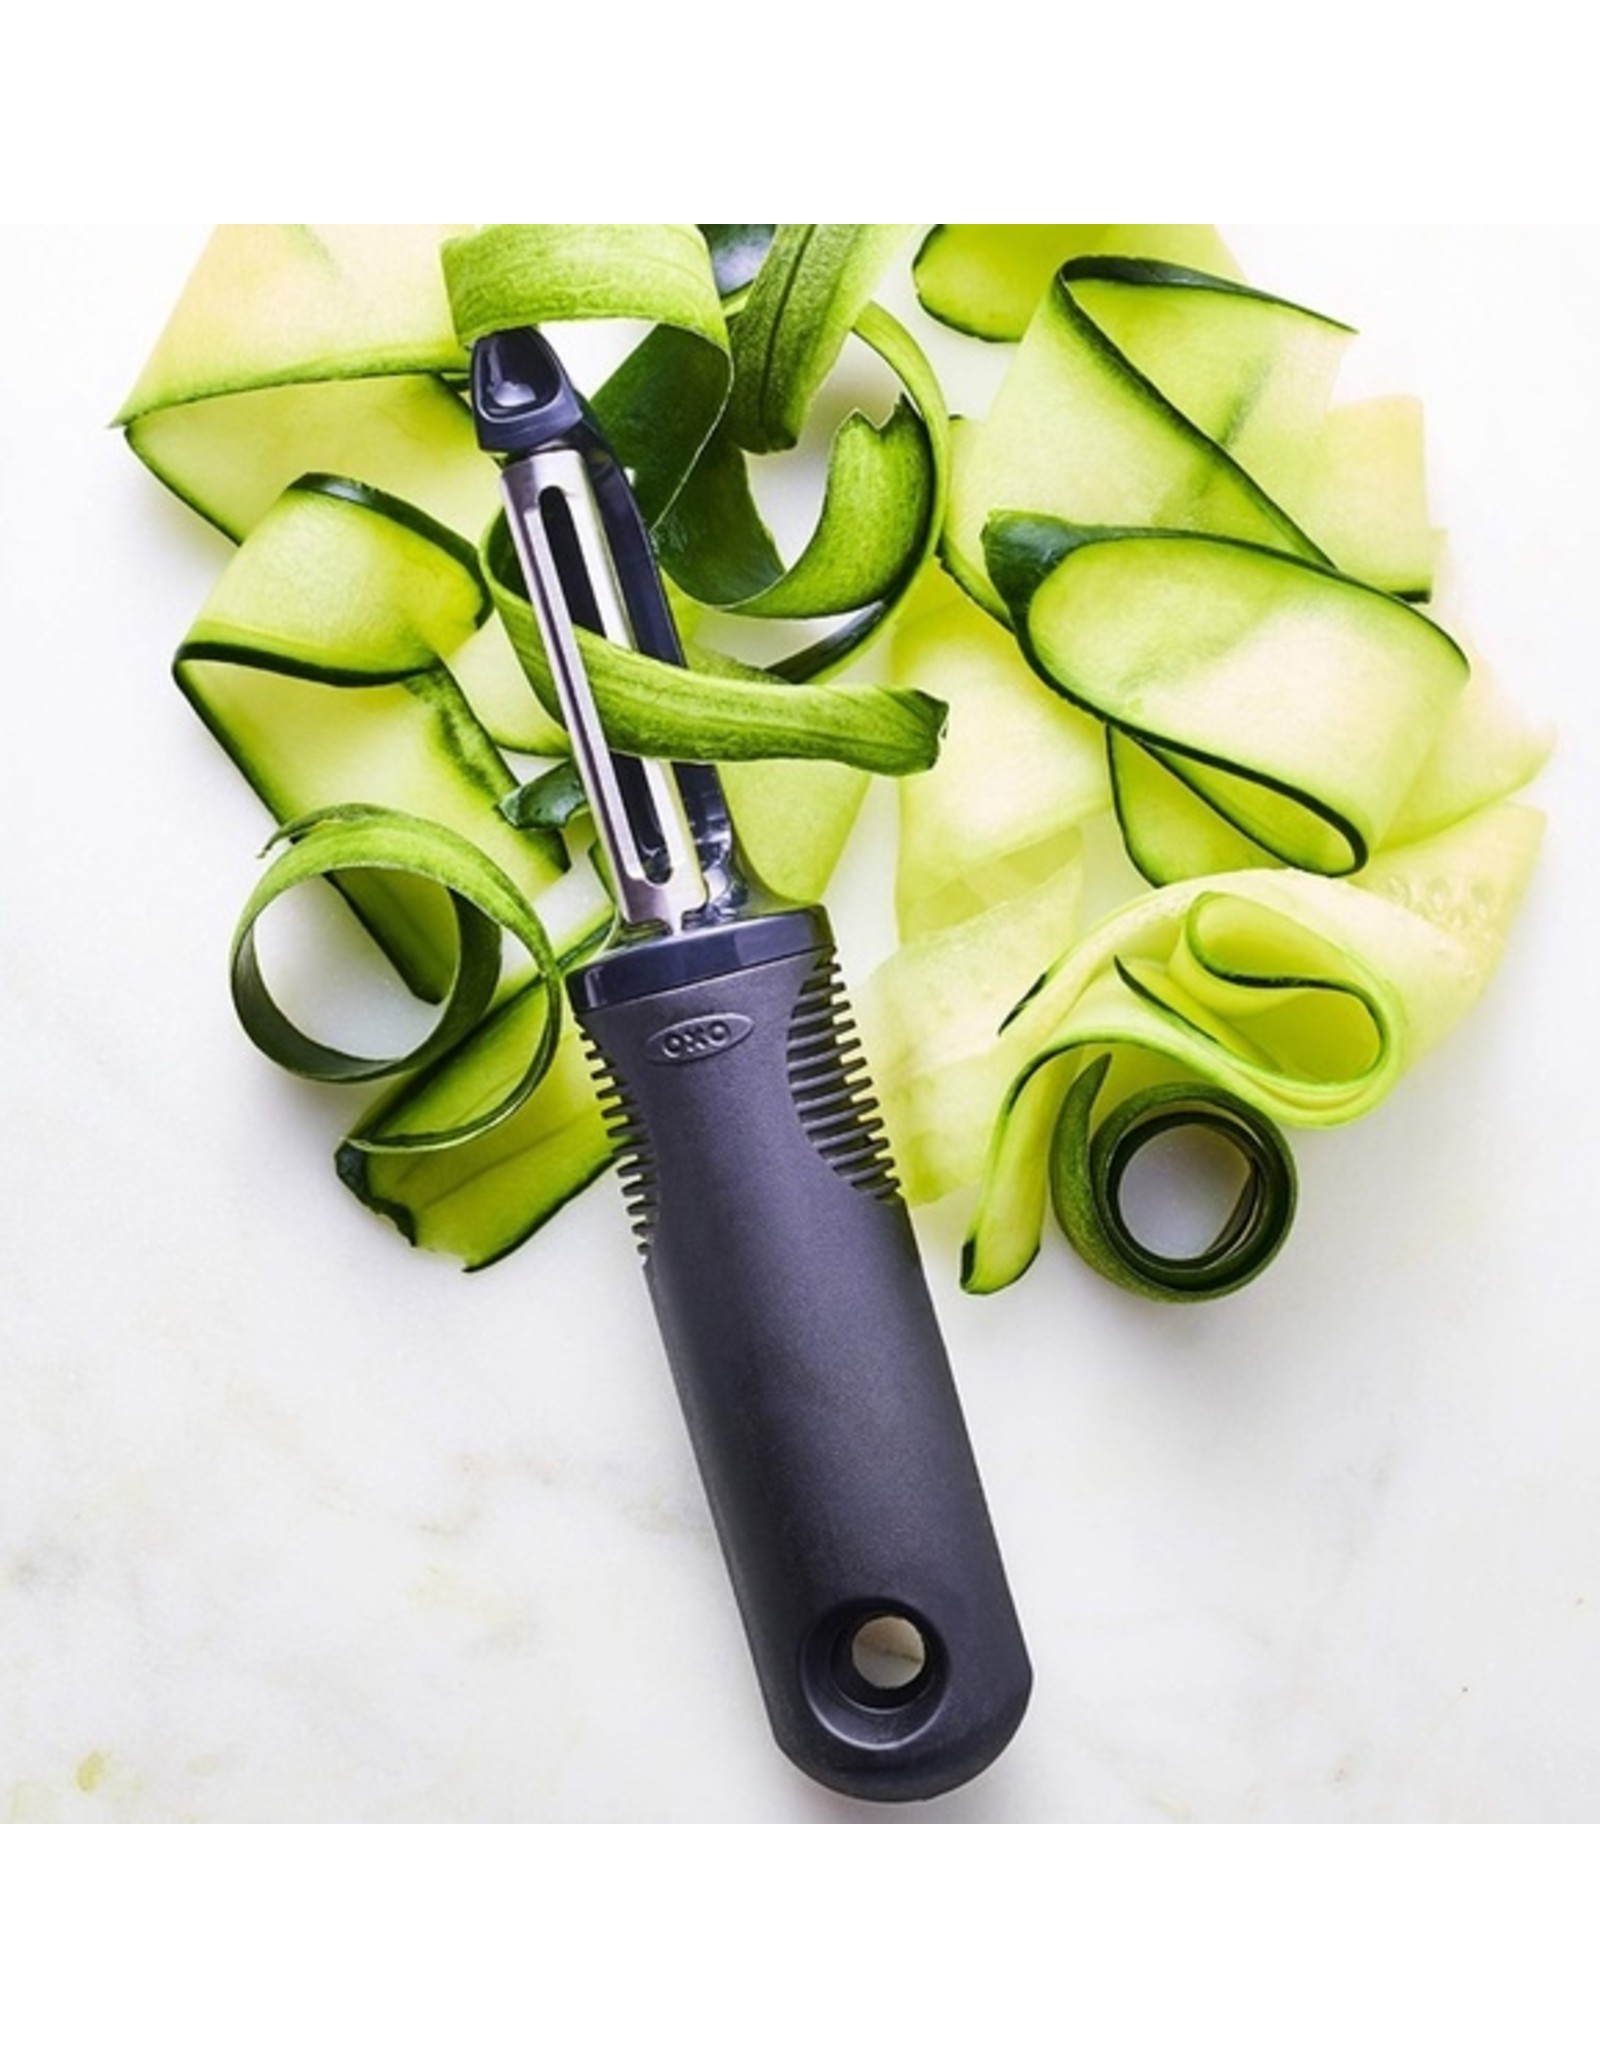 OXO Good Grips Swivel Vegetable Peeler